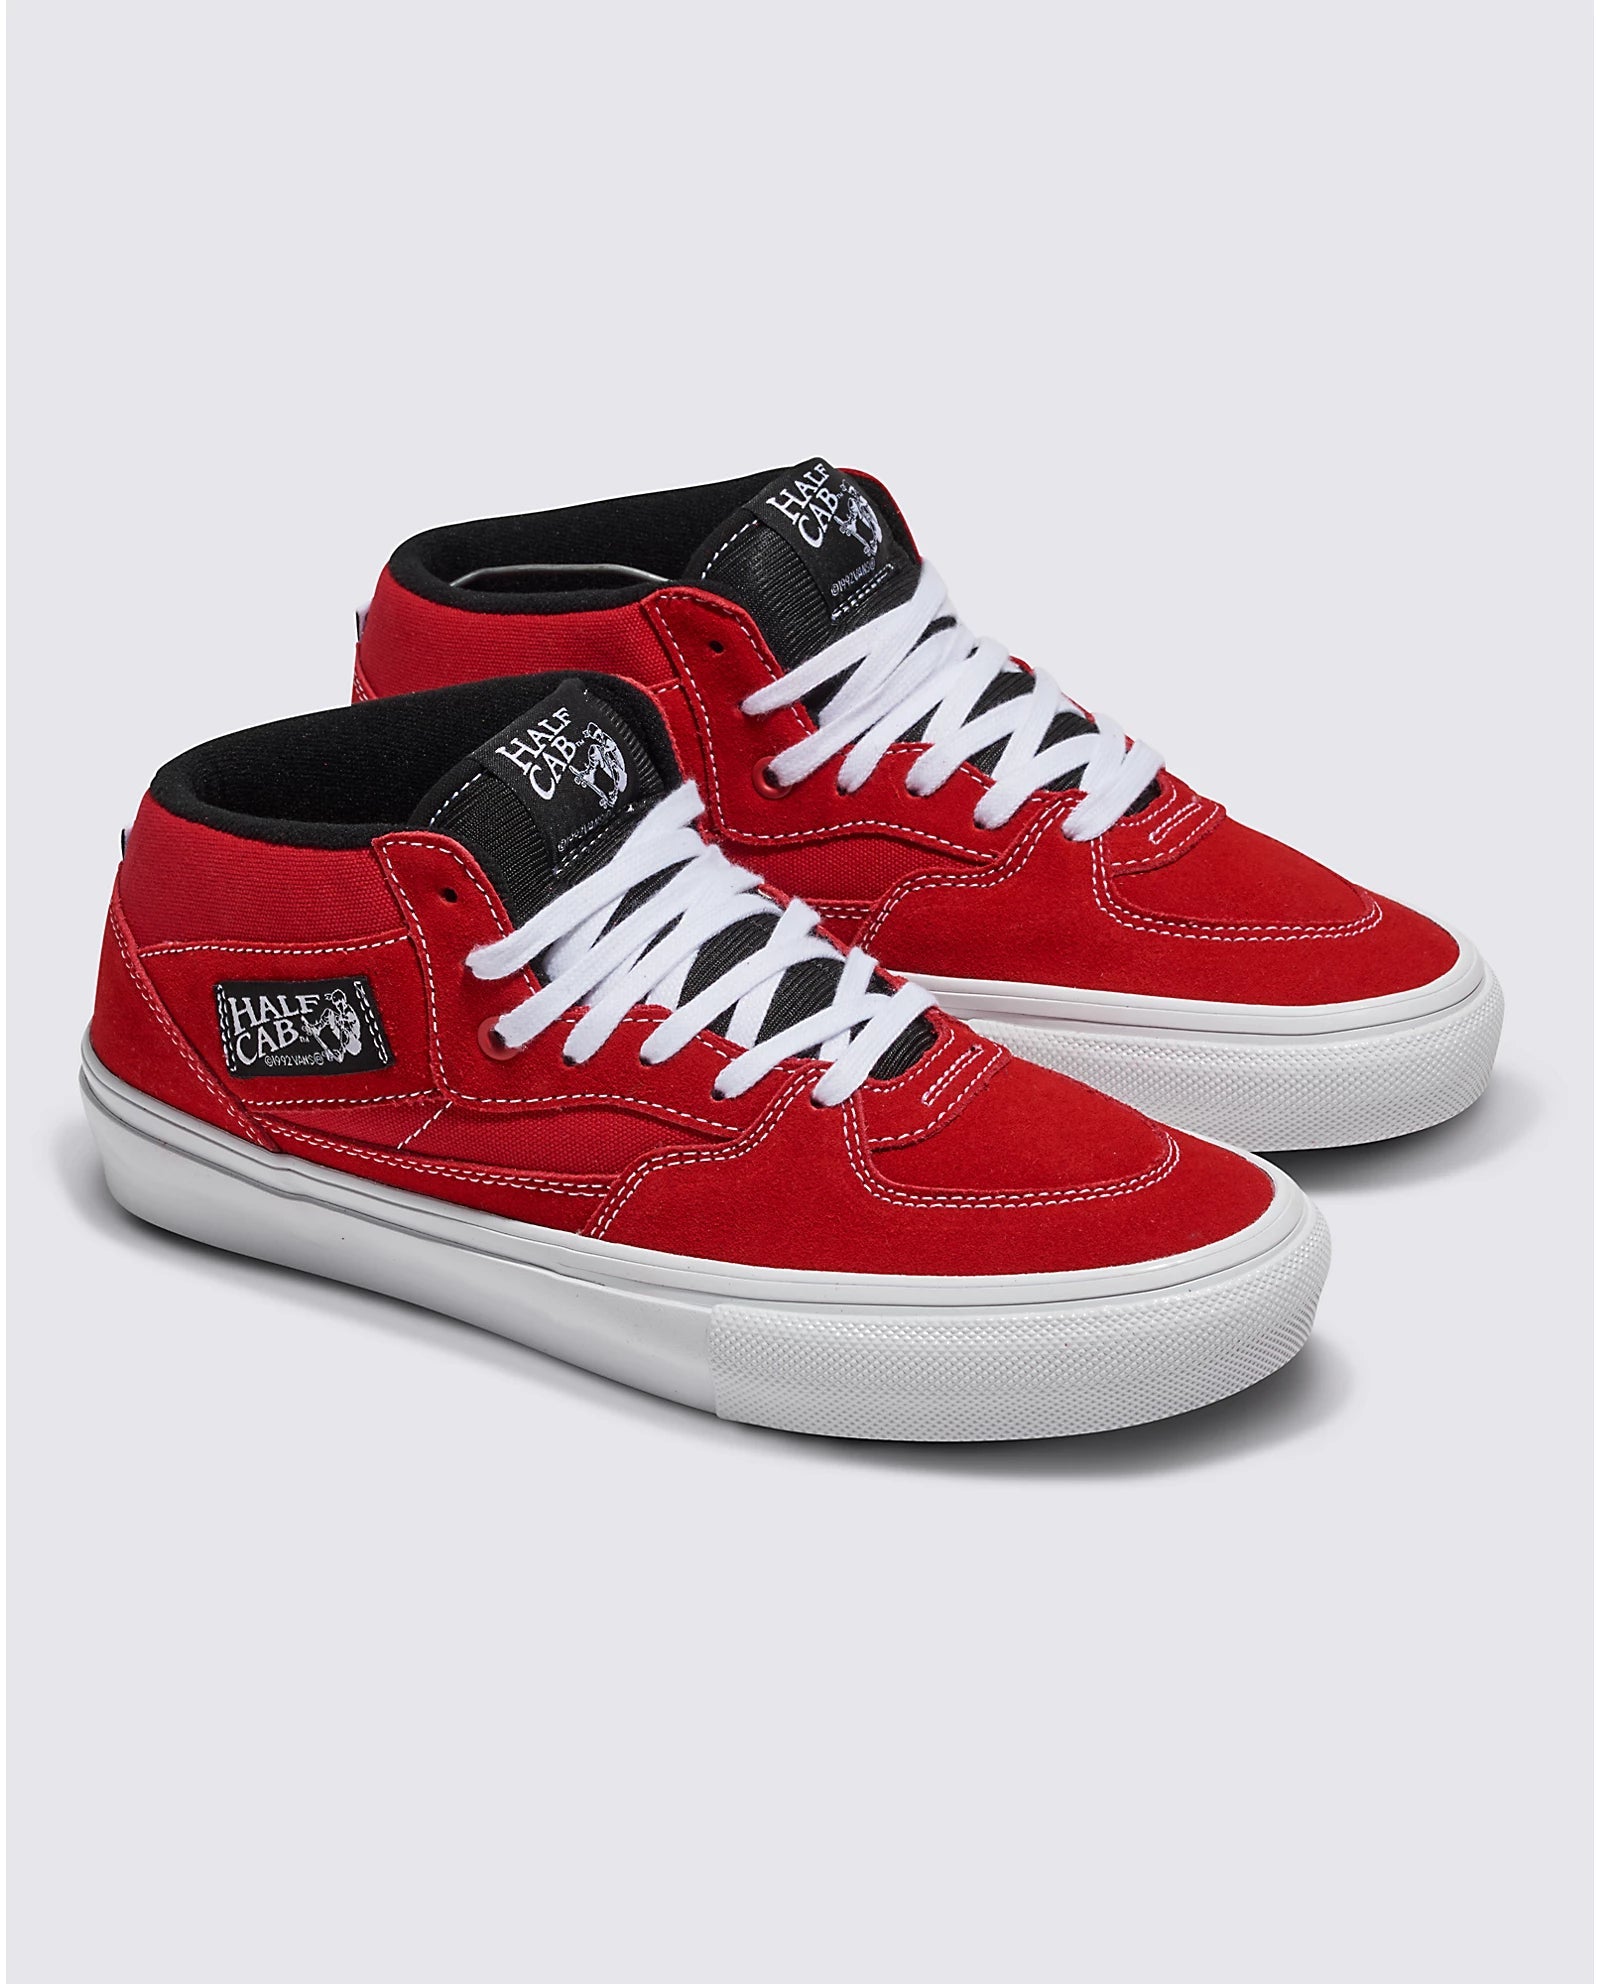 VANS Skate Half Cab Shoes Red/White Men's Skate Shoes Vans 